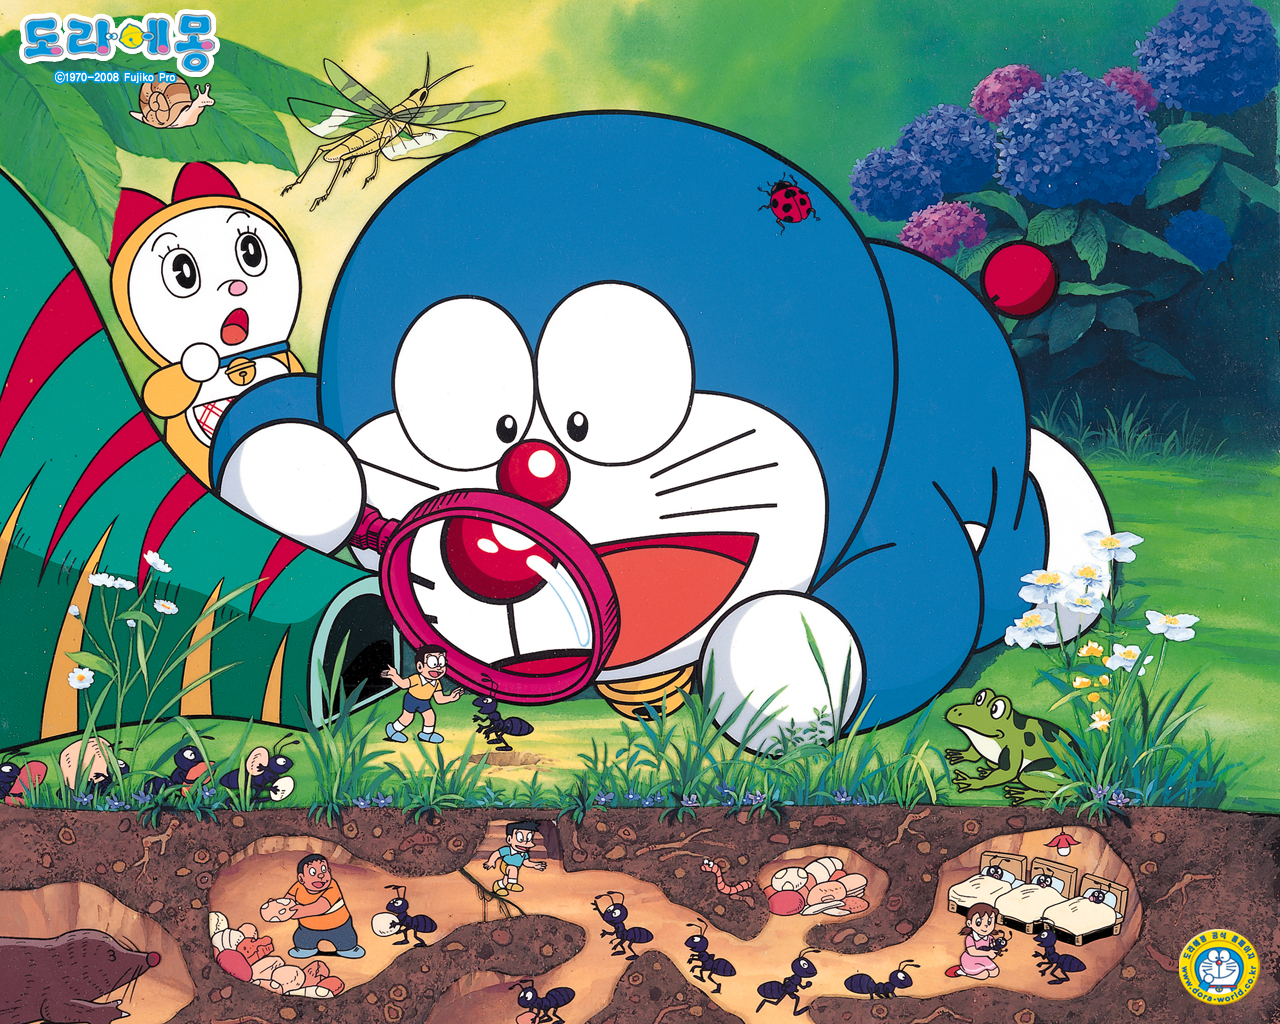 Anime: Những tác phẩm anime thường mang đến những câu chuyện gần gũi, cảm động và tràn đầy tính nhân văn. Doraemon không phải là một ngoại lệ khi bạn muốn tìm một tác phẩm anime đáng xem. Bạn sẽ không thất vọng với những câu chuyện trong Doraemon.